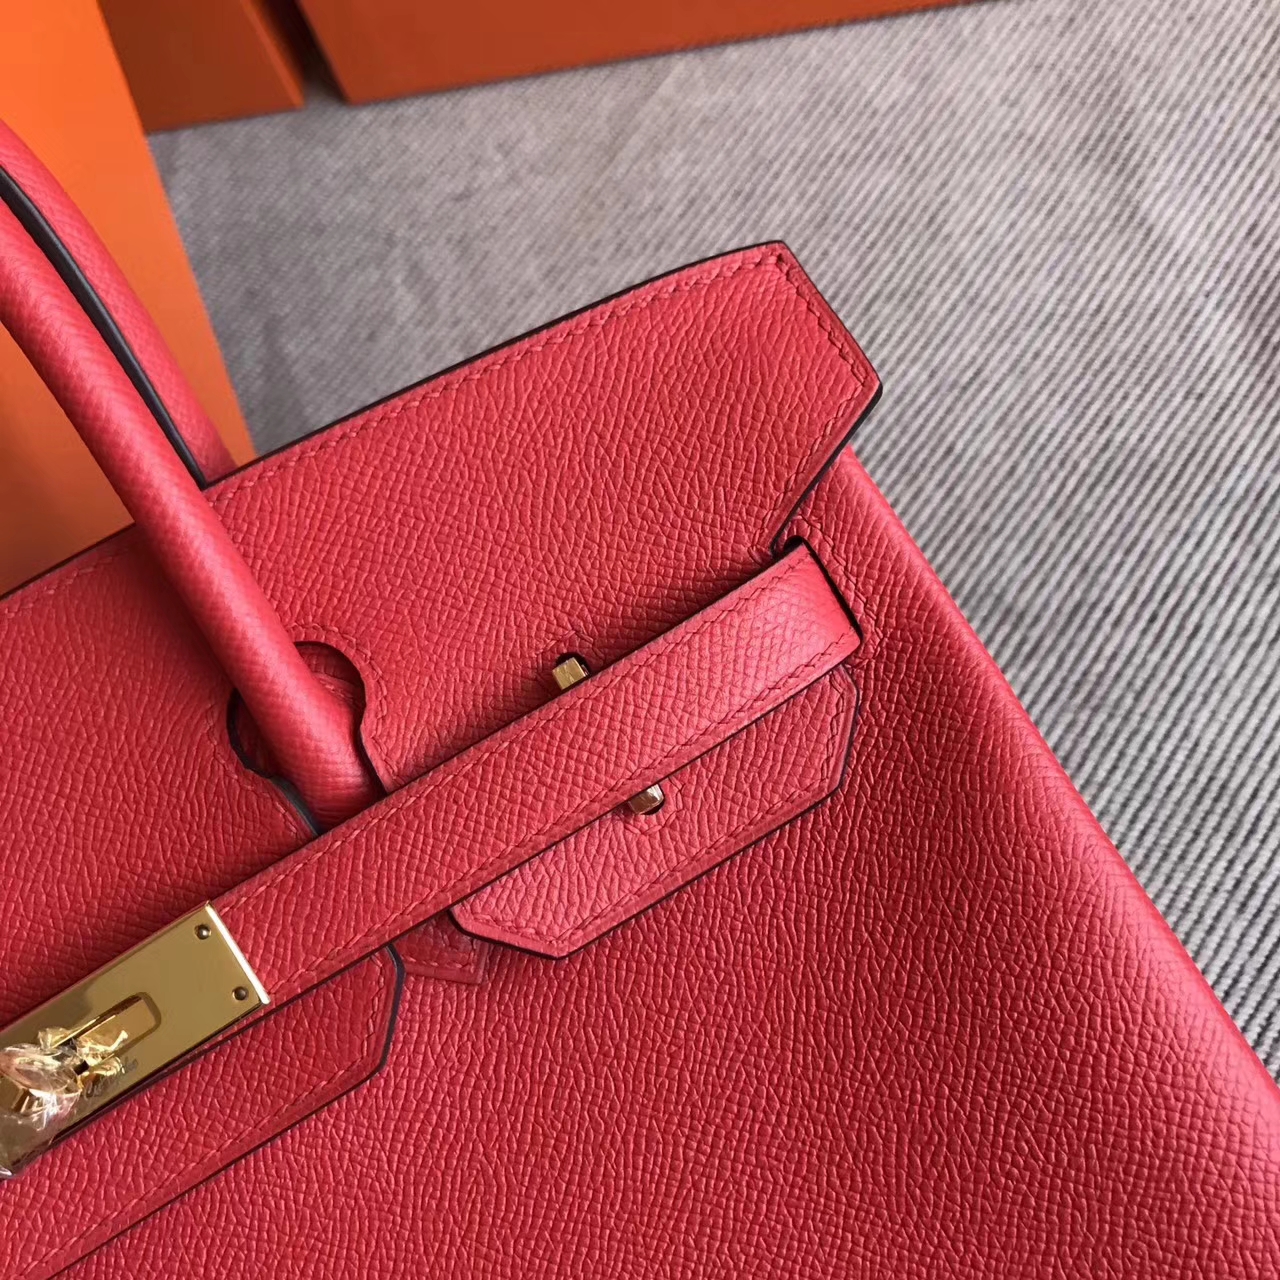 Discount Hermes Epsom Leather Birkin30cm Handbag in Q5 Rouge Casaque